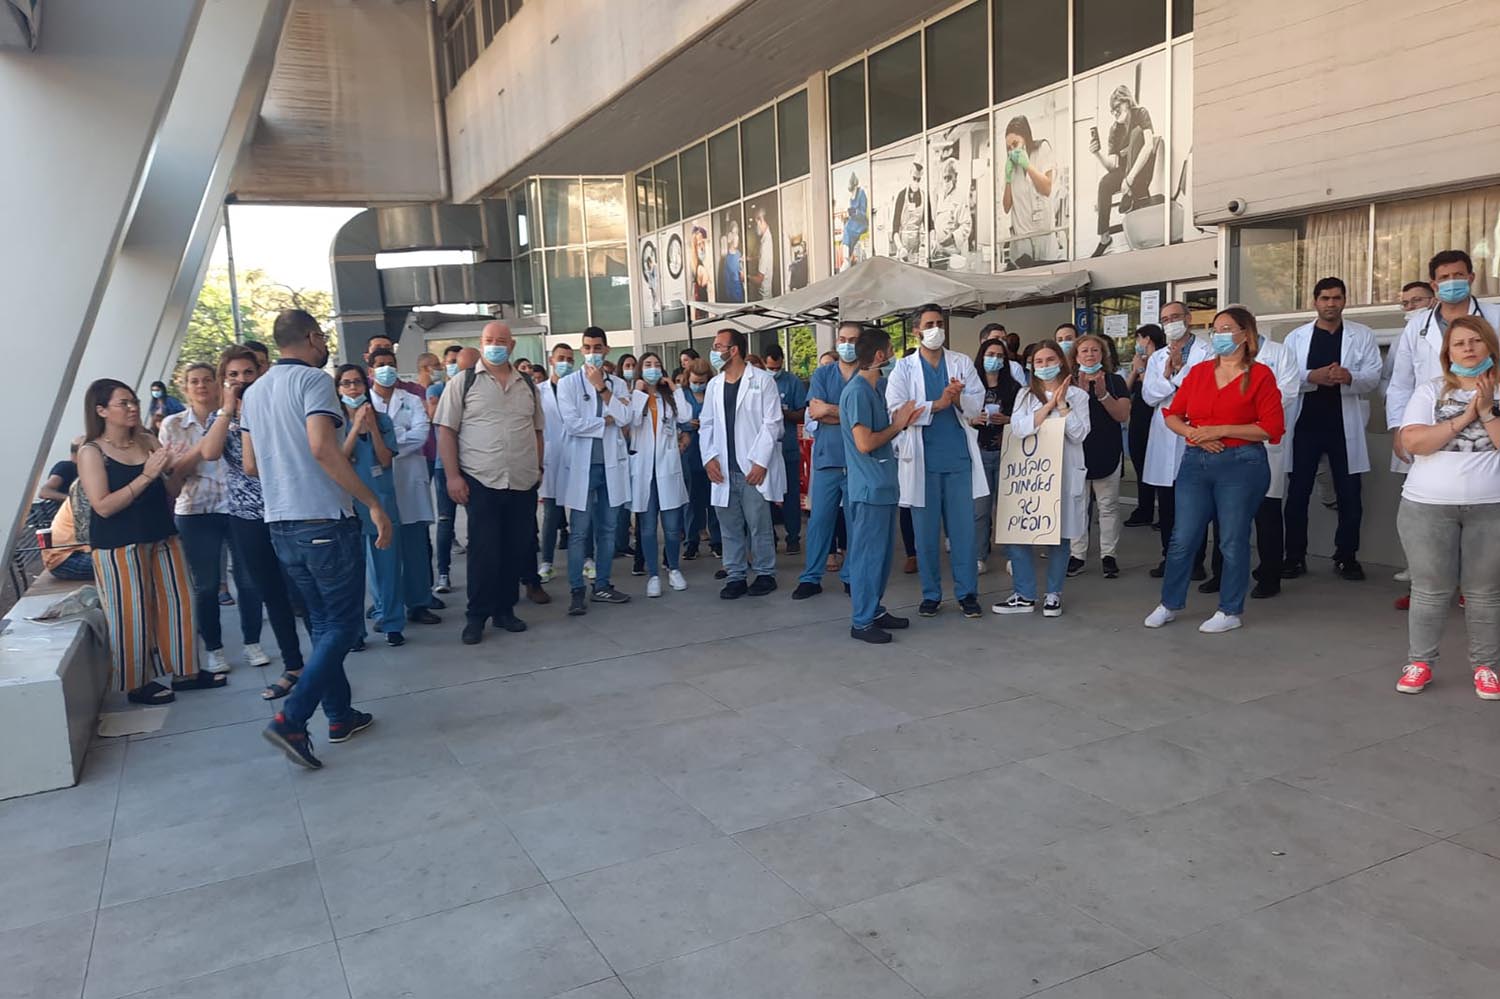 עצרת מחאה התקיימה הבוקר בכניסה למרכז הרפואי בני ציון בחיפה במחאה על אירועי האלימות במערכת הבריאות נגד הרופאים והצוותים הרפואיים (צילום: המרכז הרפואי בני ציון)